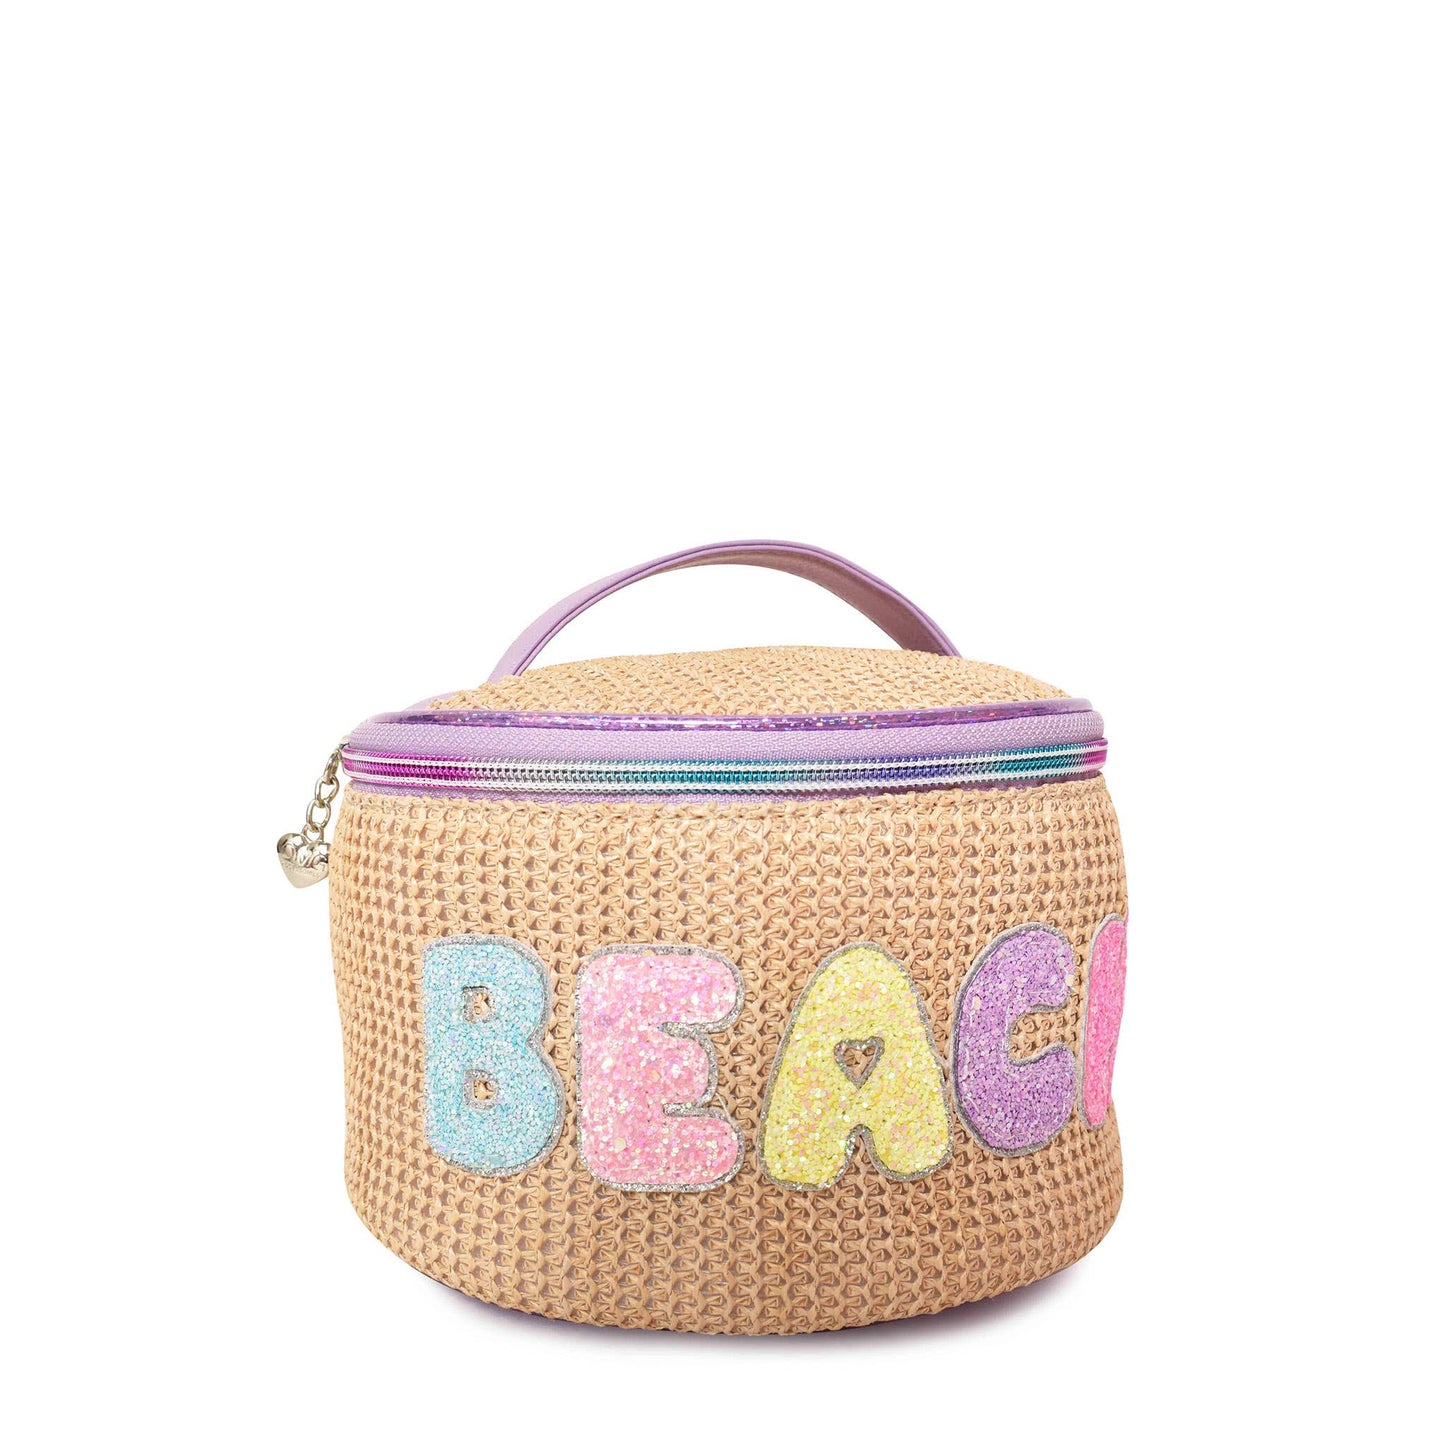 'Beach' Straw Glam Bag